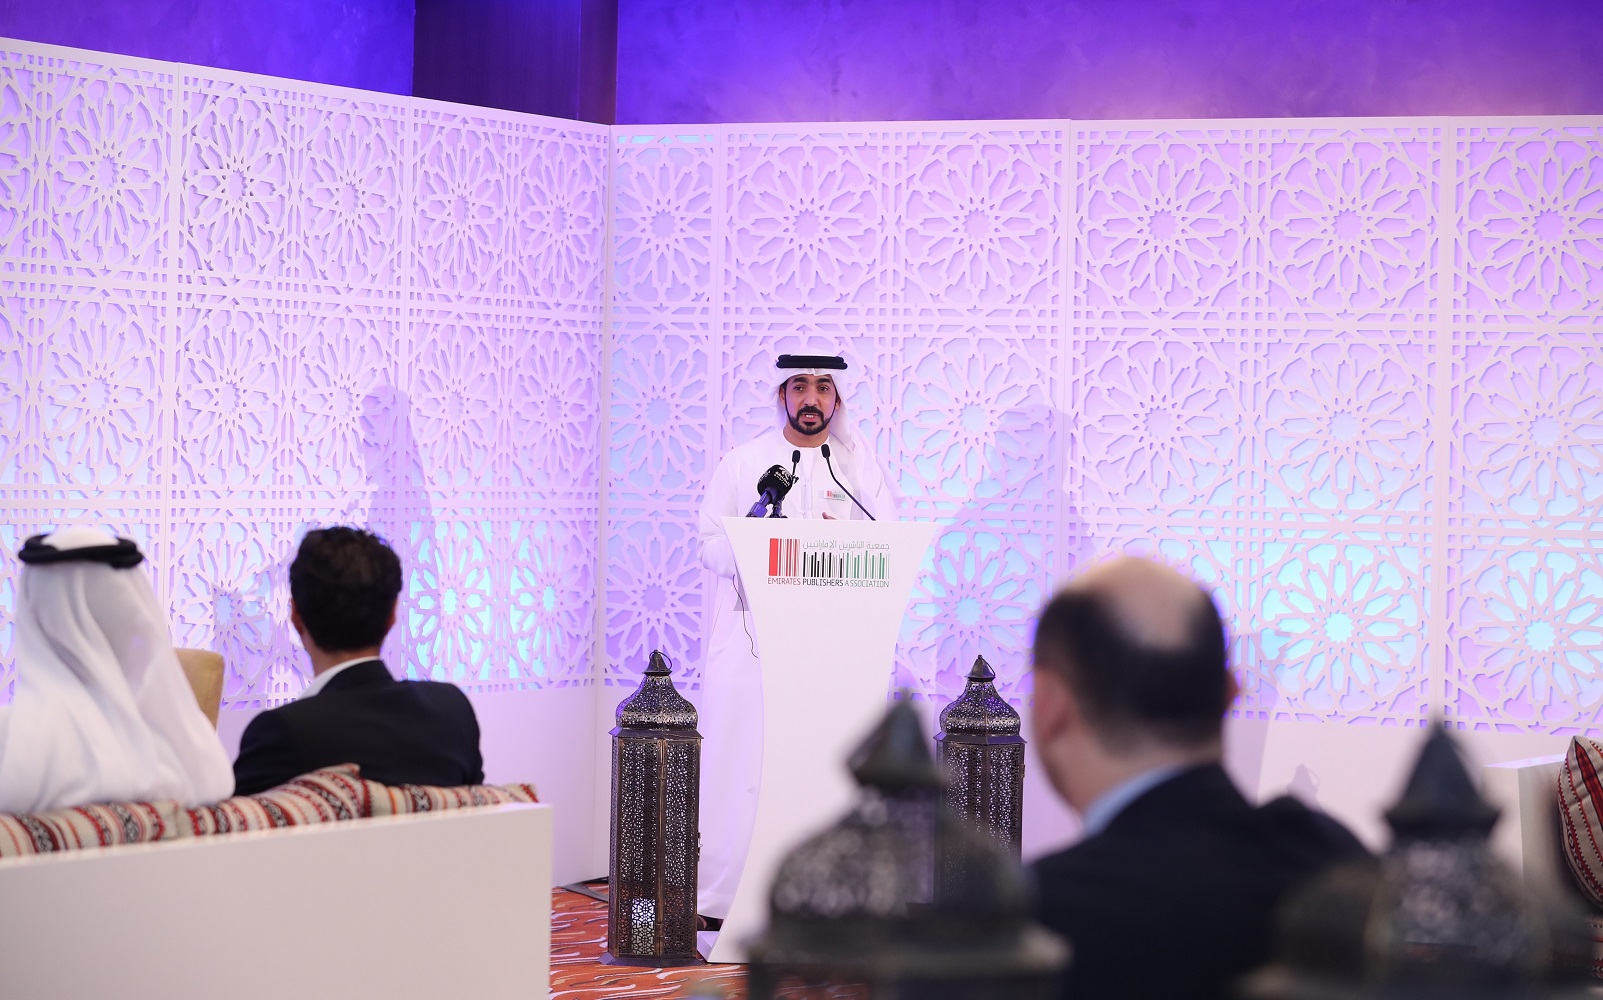 راشد الكوس المدير التنفيذي لجمعية الناشرين الإماراتيين خلال كلمته التي ألقاها في الأمسية الرمضانية